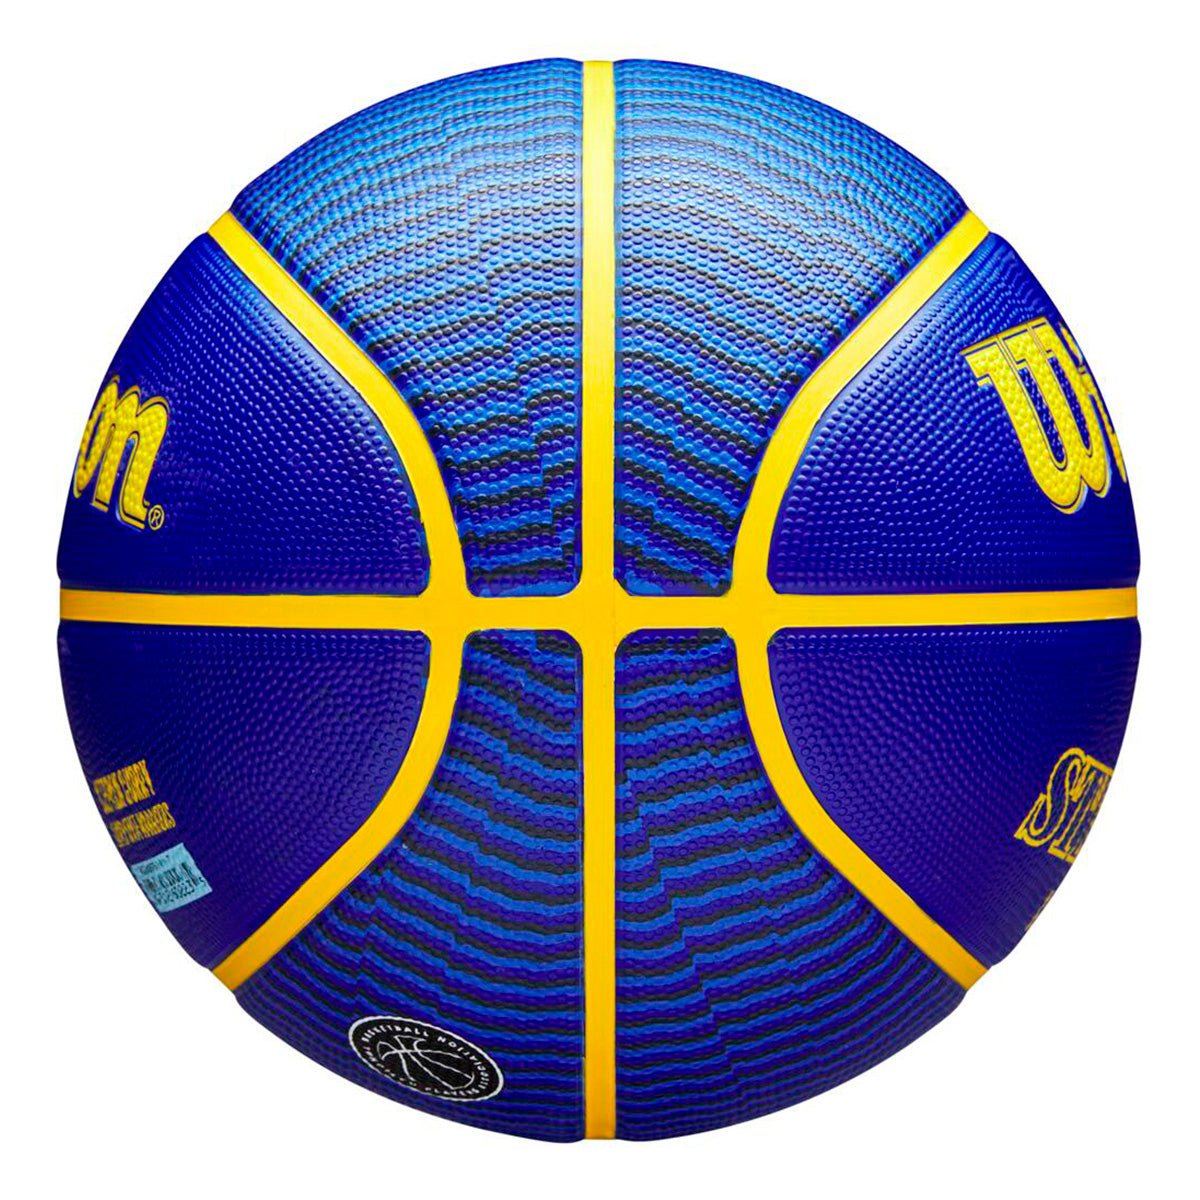 Bola de Basquete NBA PLAYER ICON Outdoor #7 - Stephen Curry